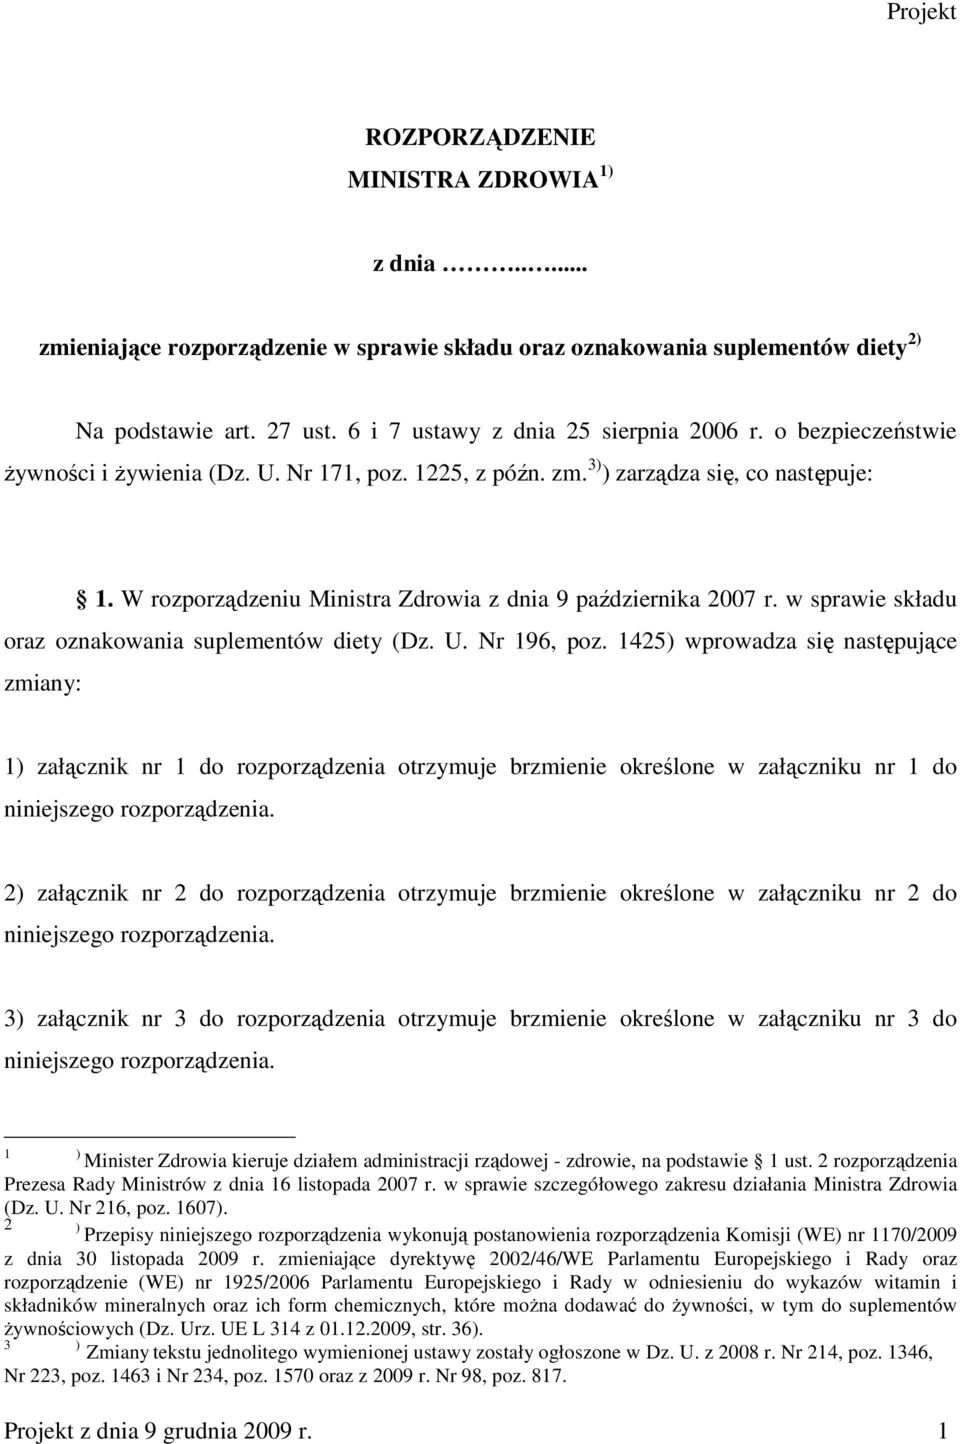 W rozporządzeniu Ministra Zdrowia z dnia 9 października 2007 r. w sprawie składu oraz oznakowania suplementów diety (Dz. U. Nr 196, poz.